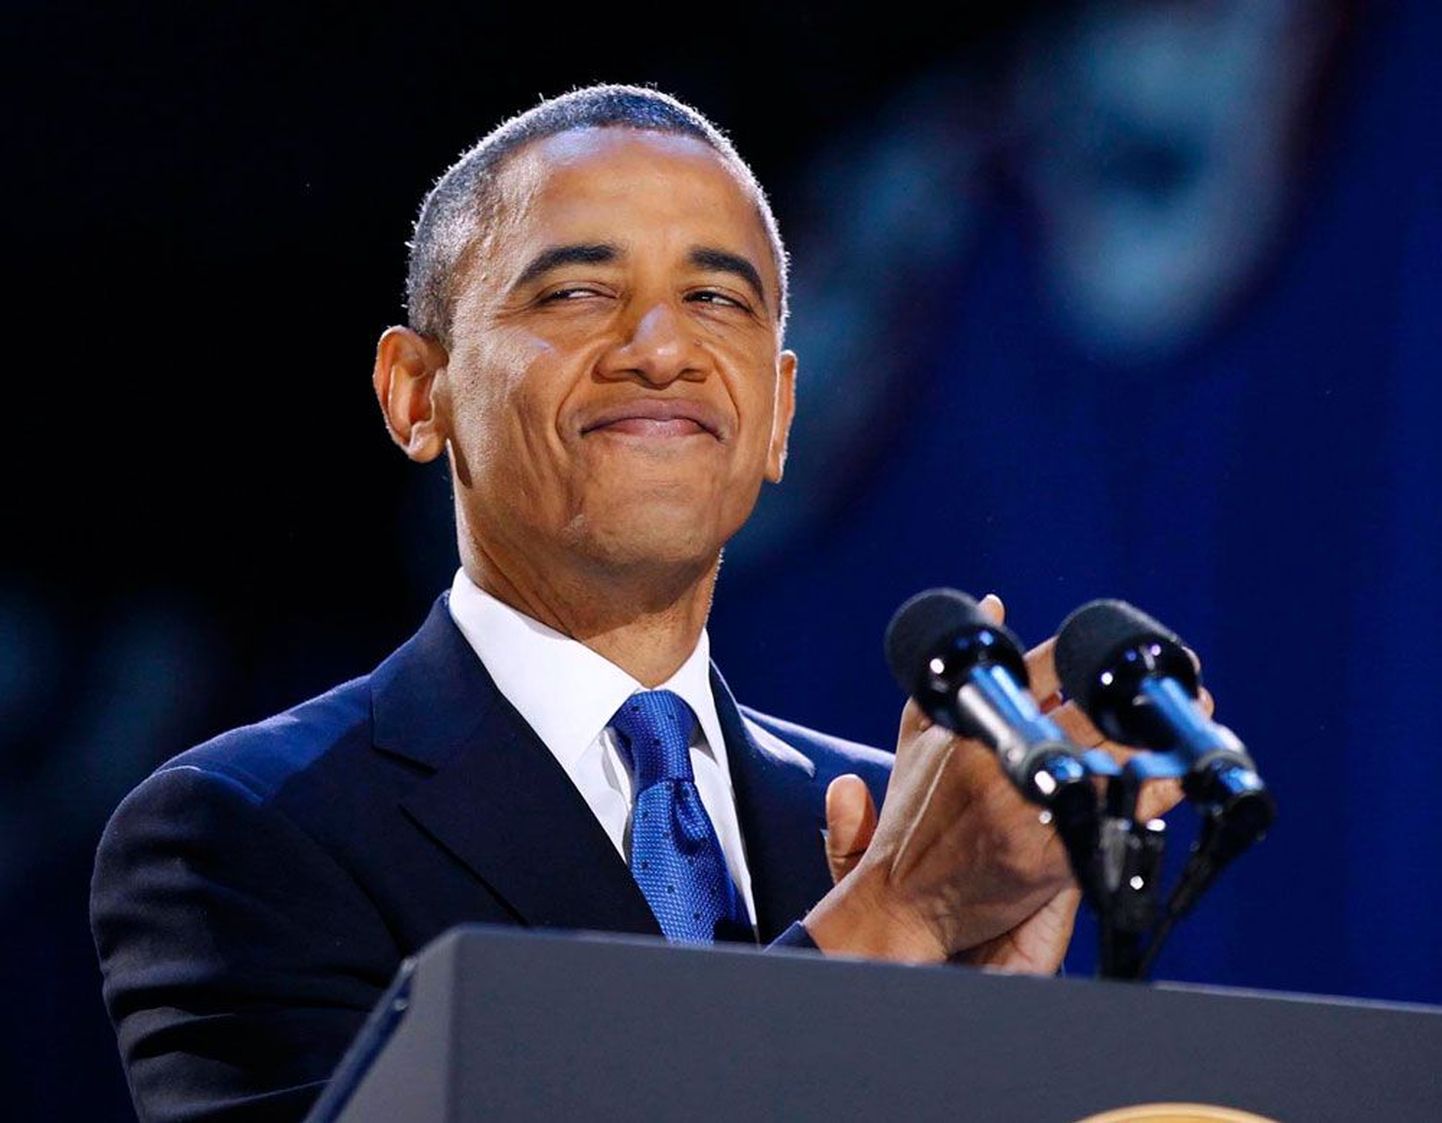 Taas presidendiks valitud Obama Chicagos valimisöö võidukõne pidamise ajal naeratamas.